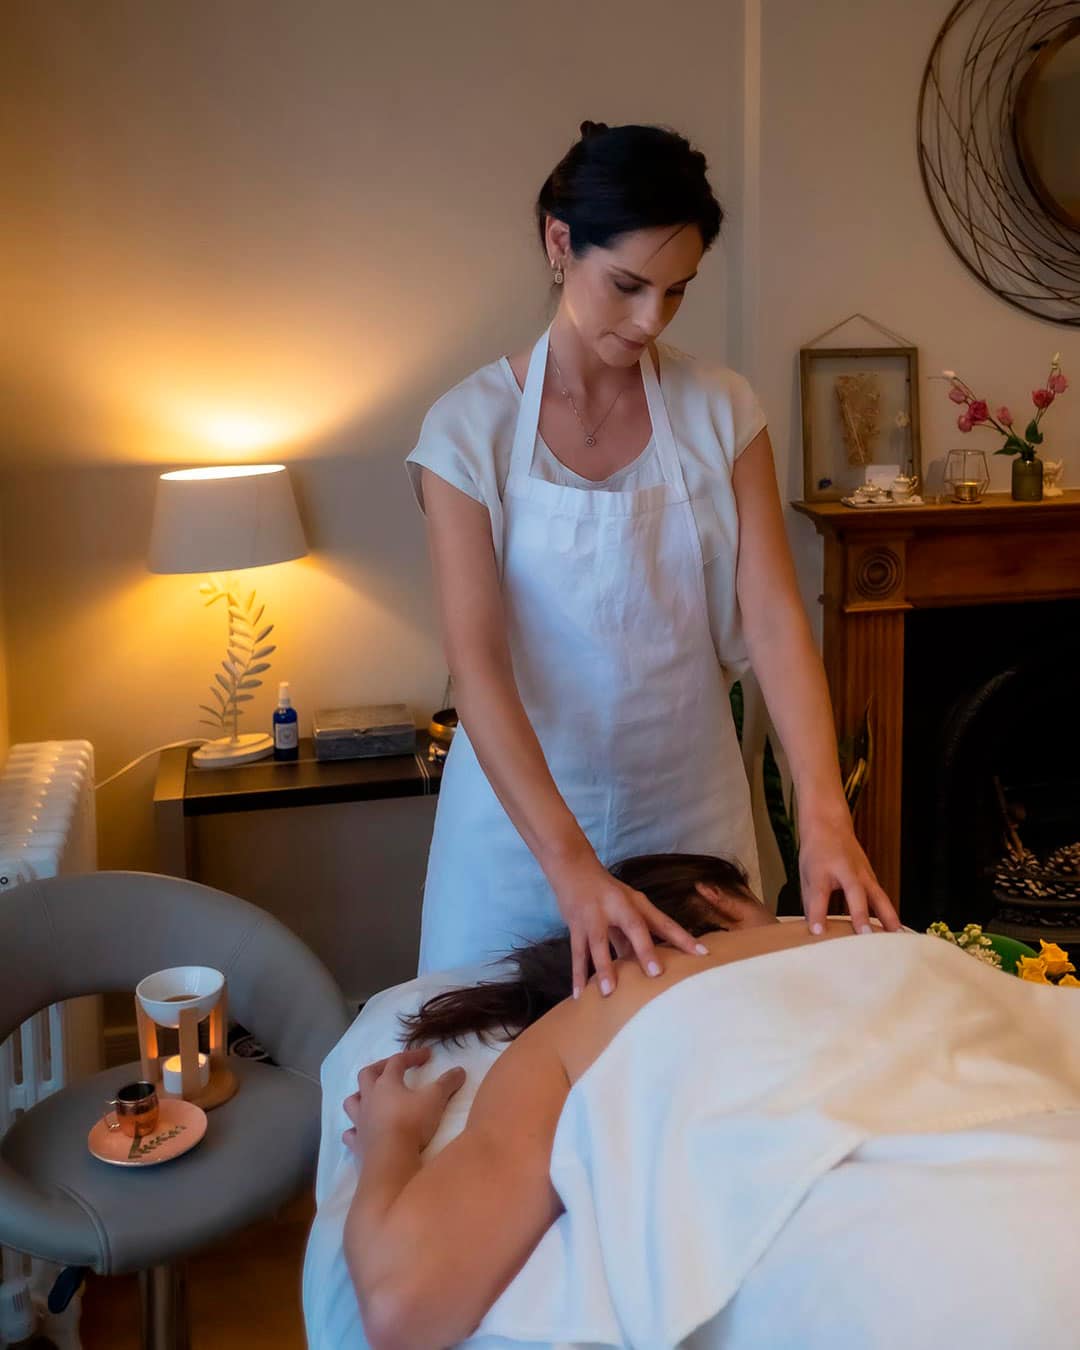 The magic healing power of Ayurvedic oily massages, called Abhyanga